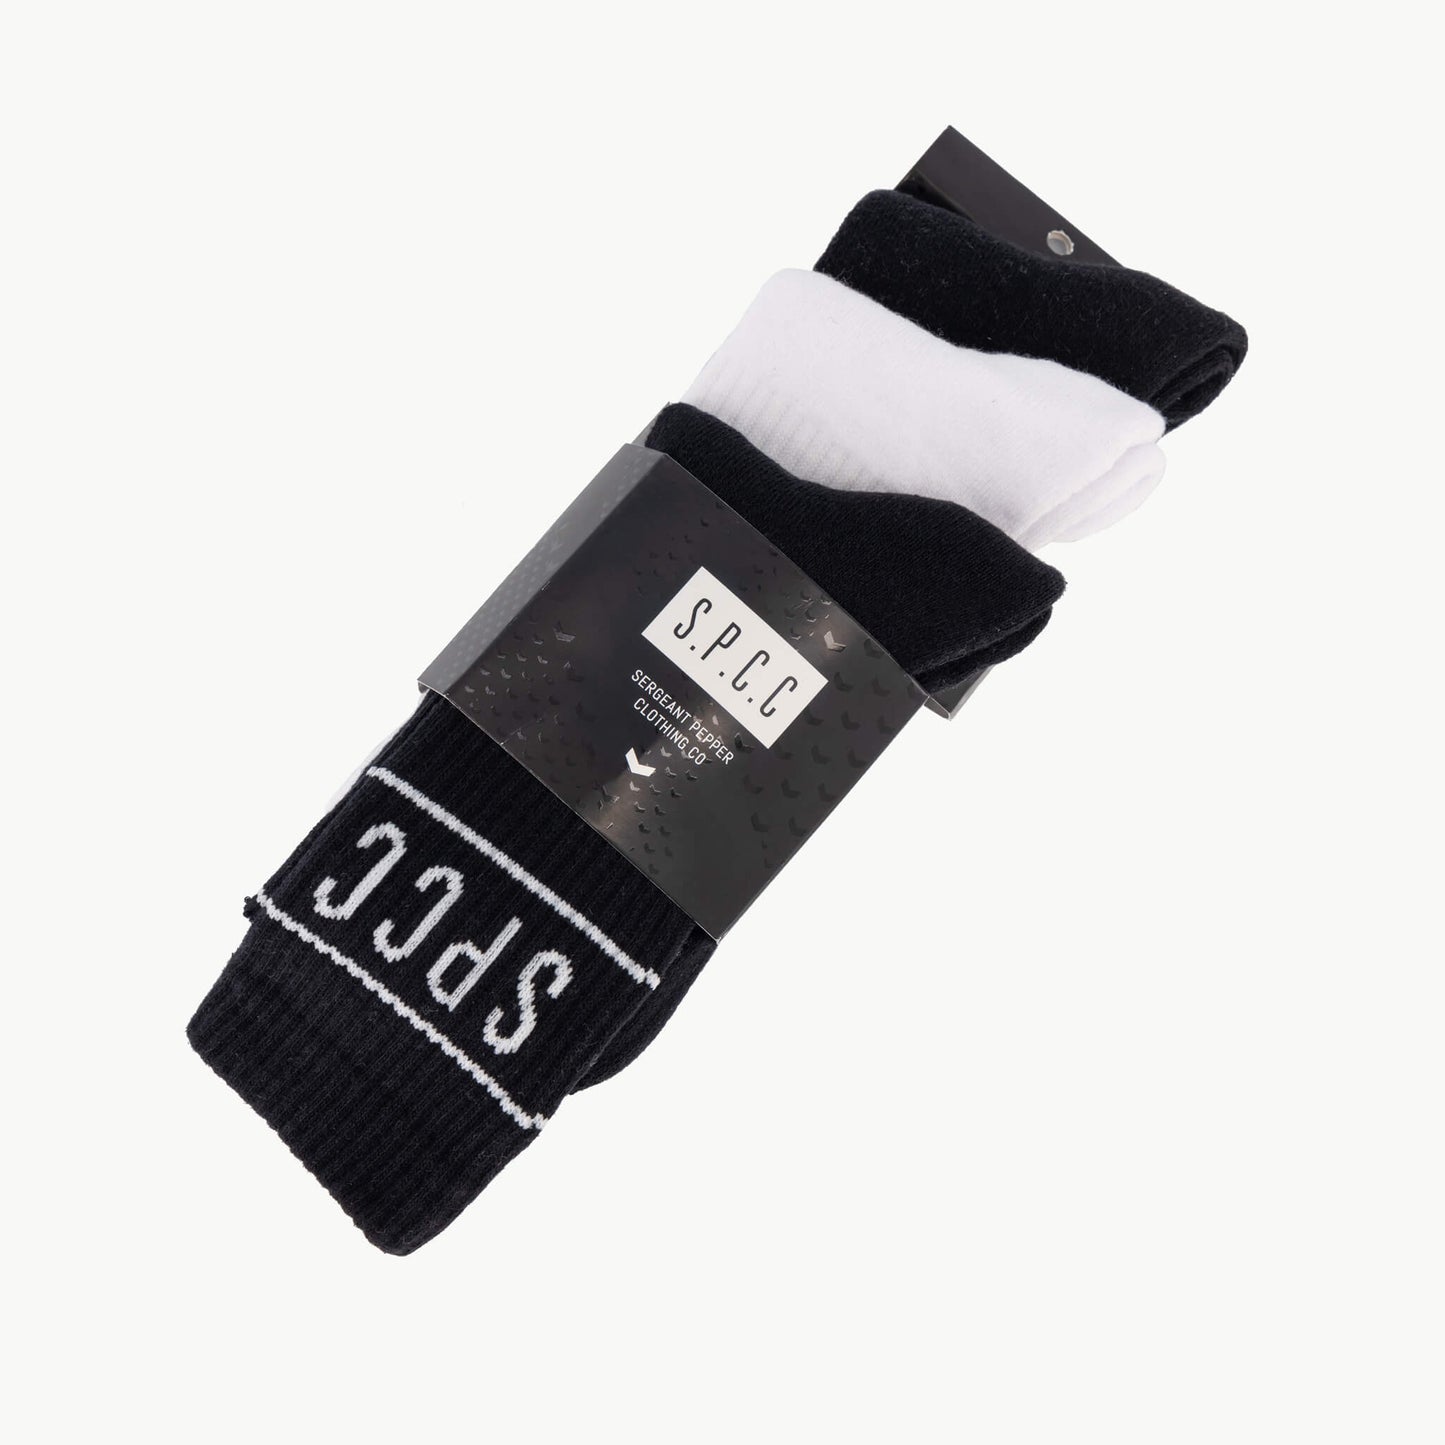 Declen Socks  - Black/White